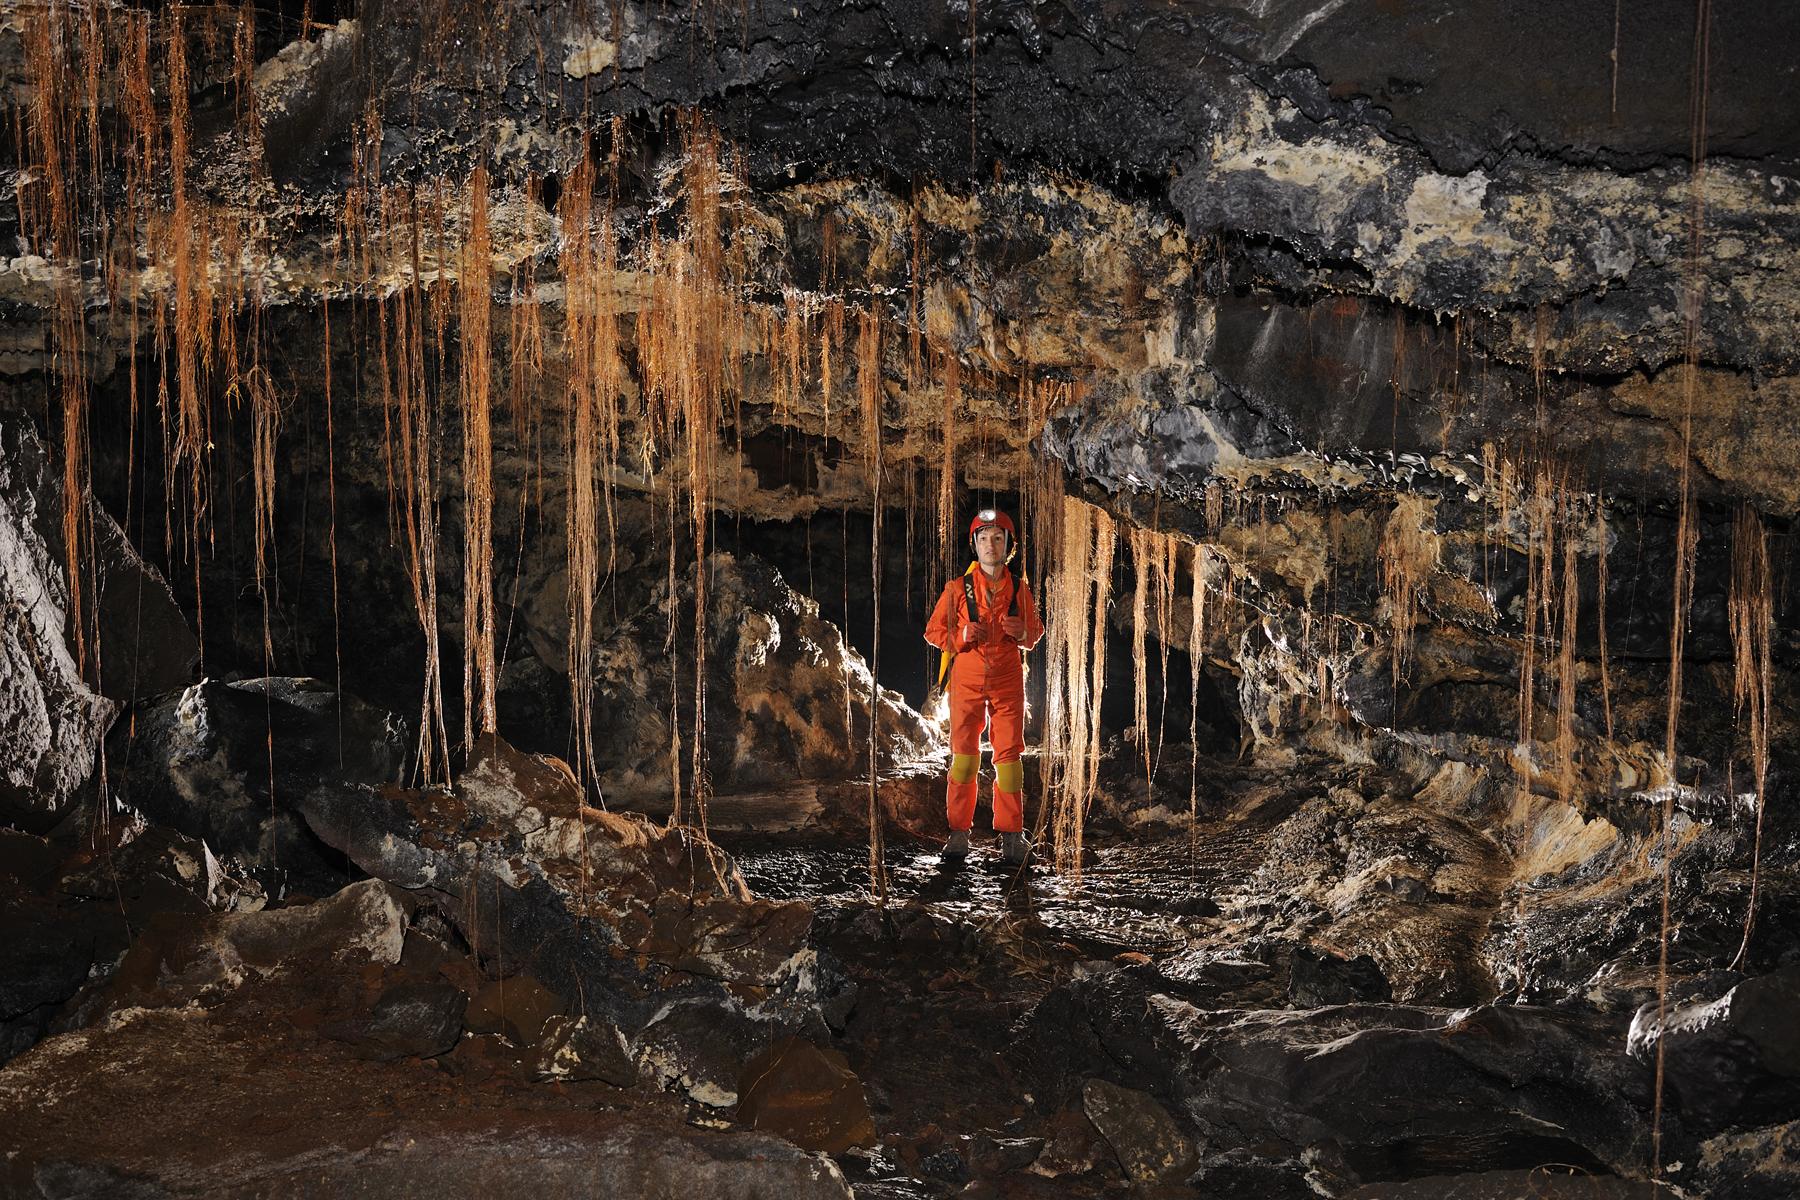 Hawaï (USA) - Tube de lave - Poha cave - Racines dans une galerie